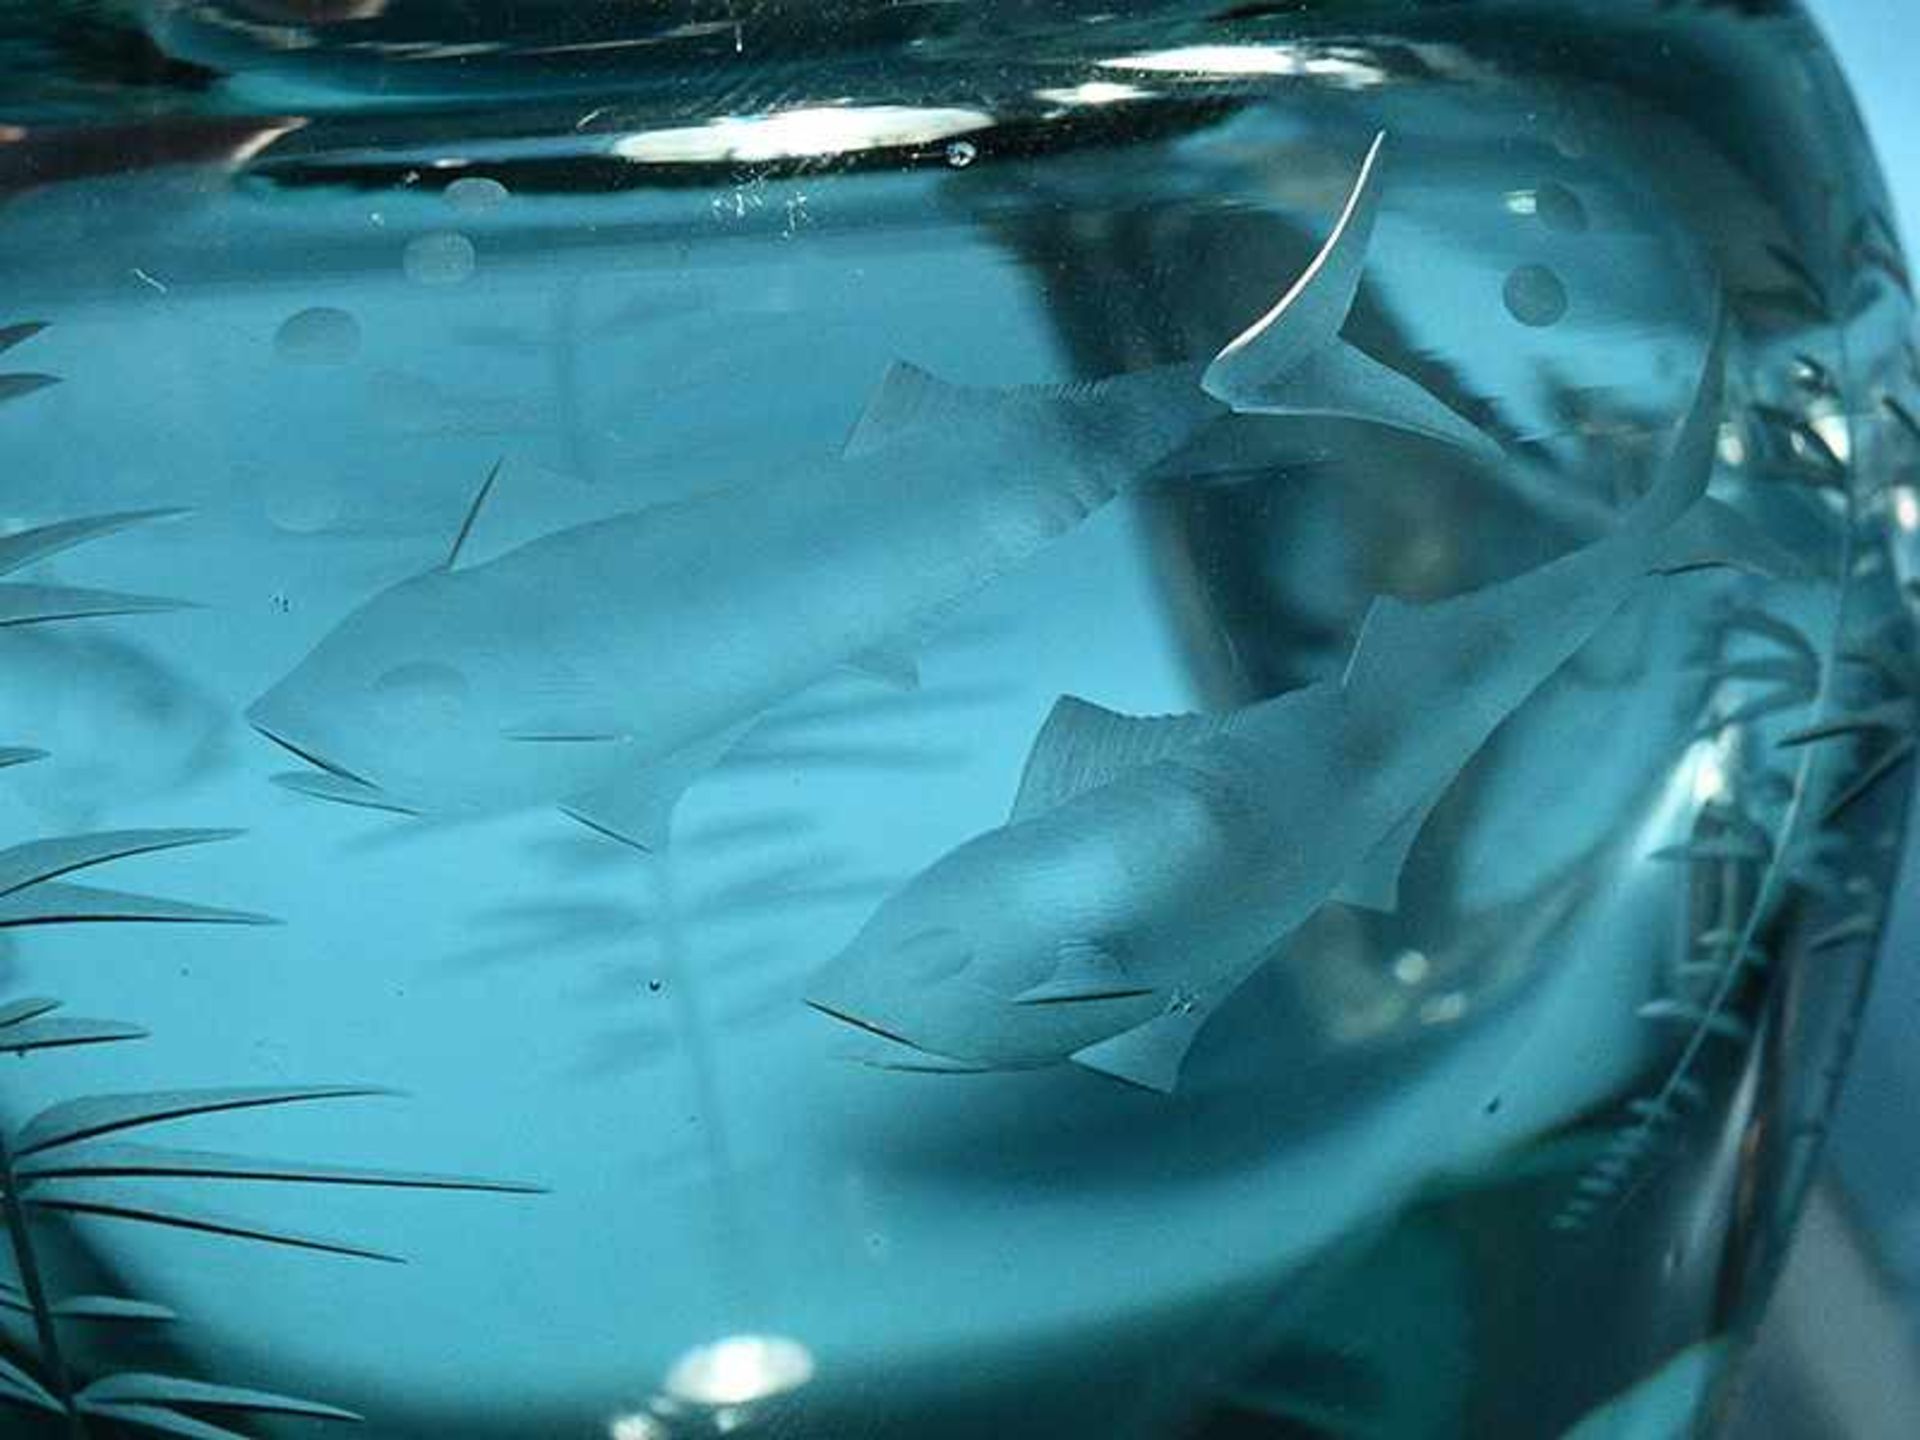 2 Glasvasen mit Fischmotiven, wohl Kosta Boda, Schweden, 20. Jh. Klarglas in farblos und graugrün - Bild 6 aus 6